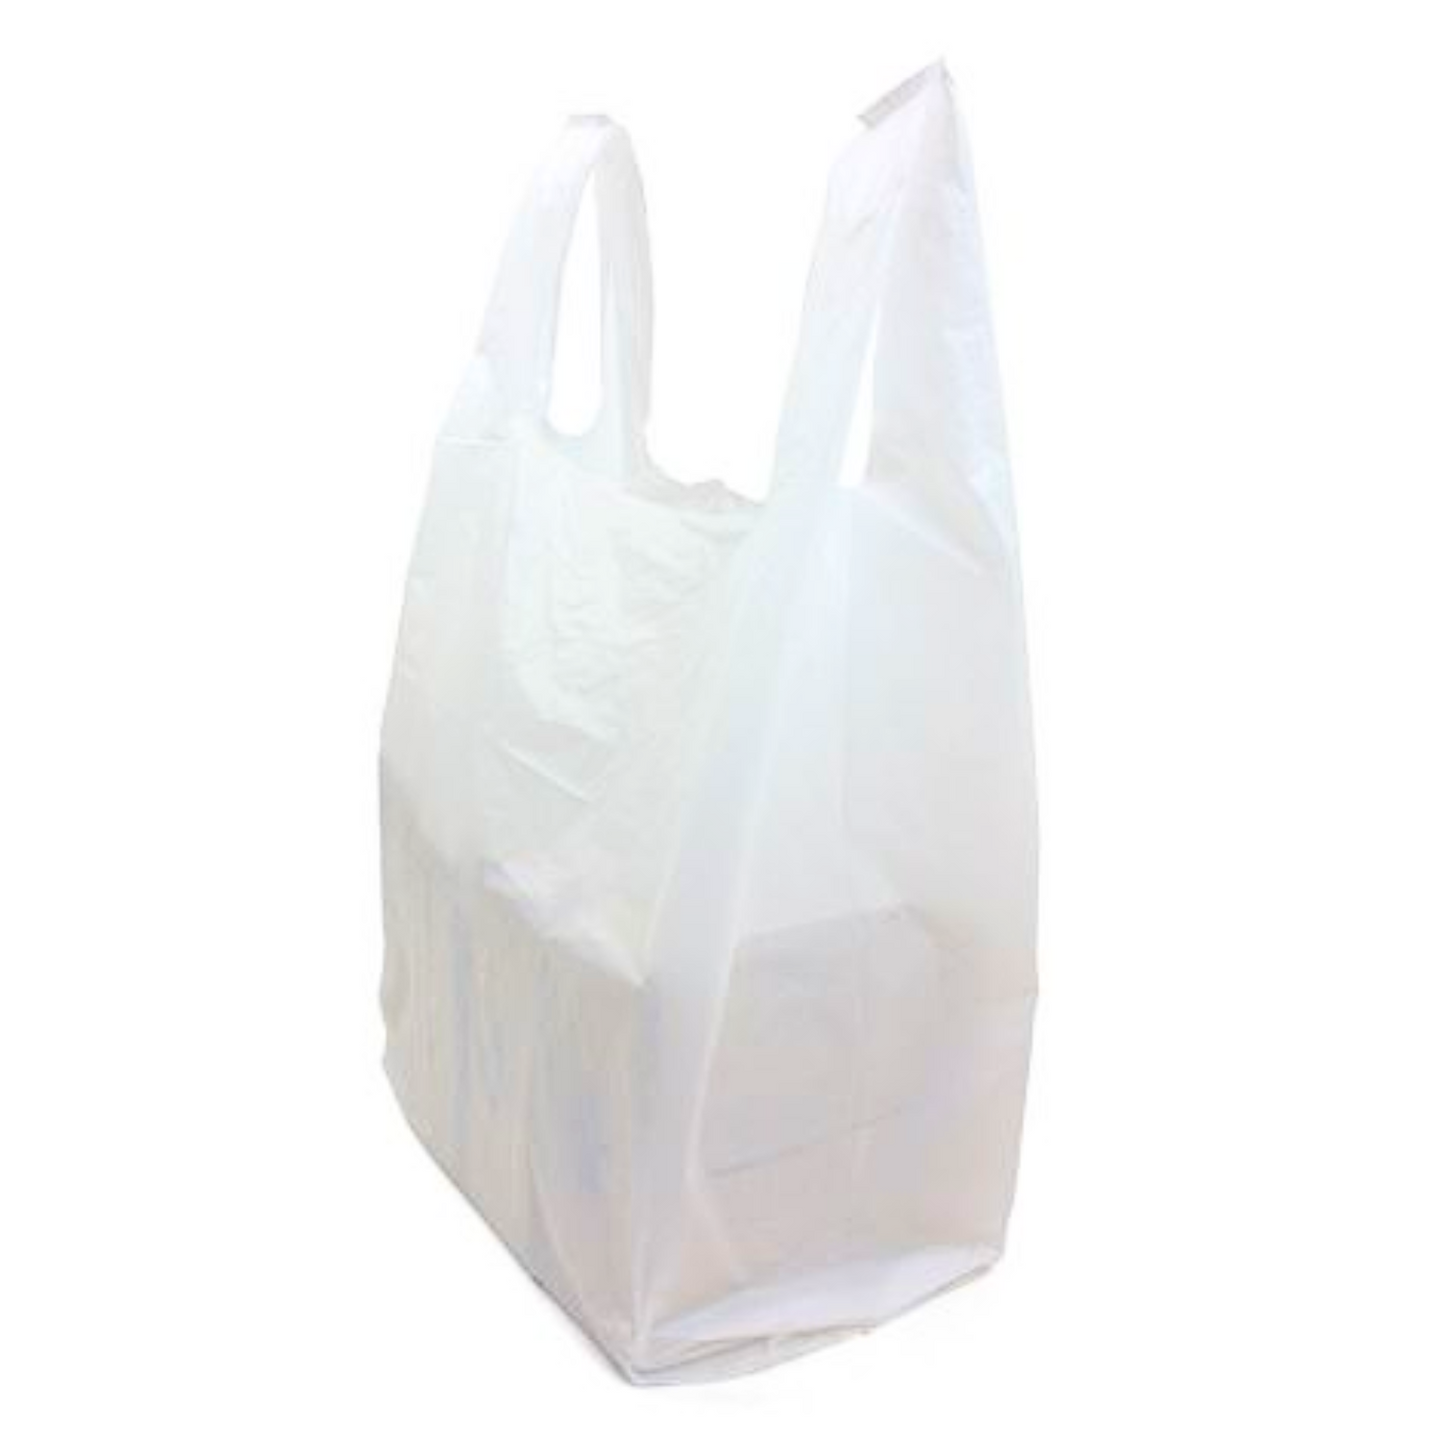 Jumbo Plastic Bags